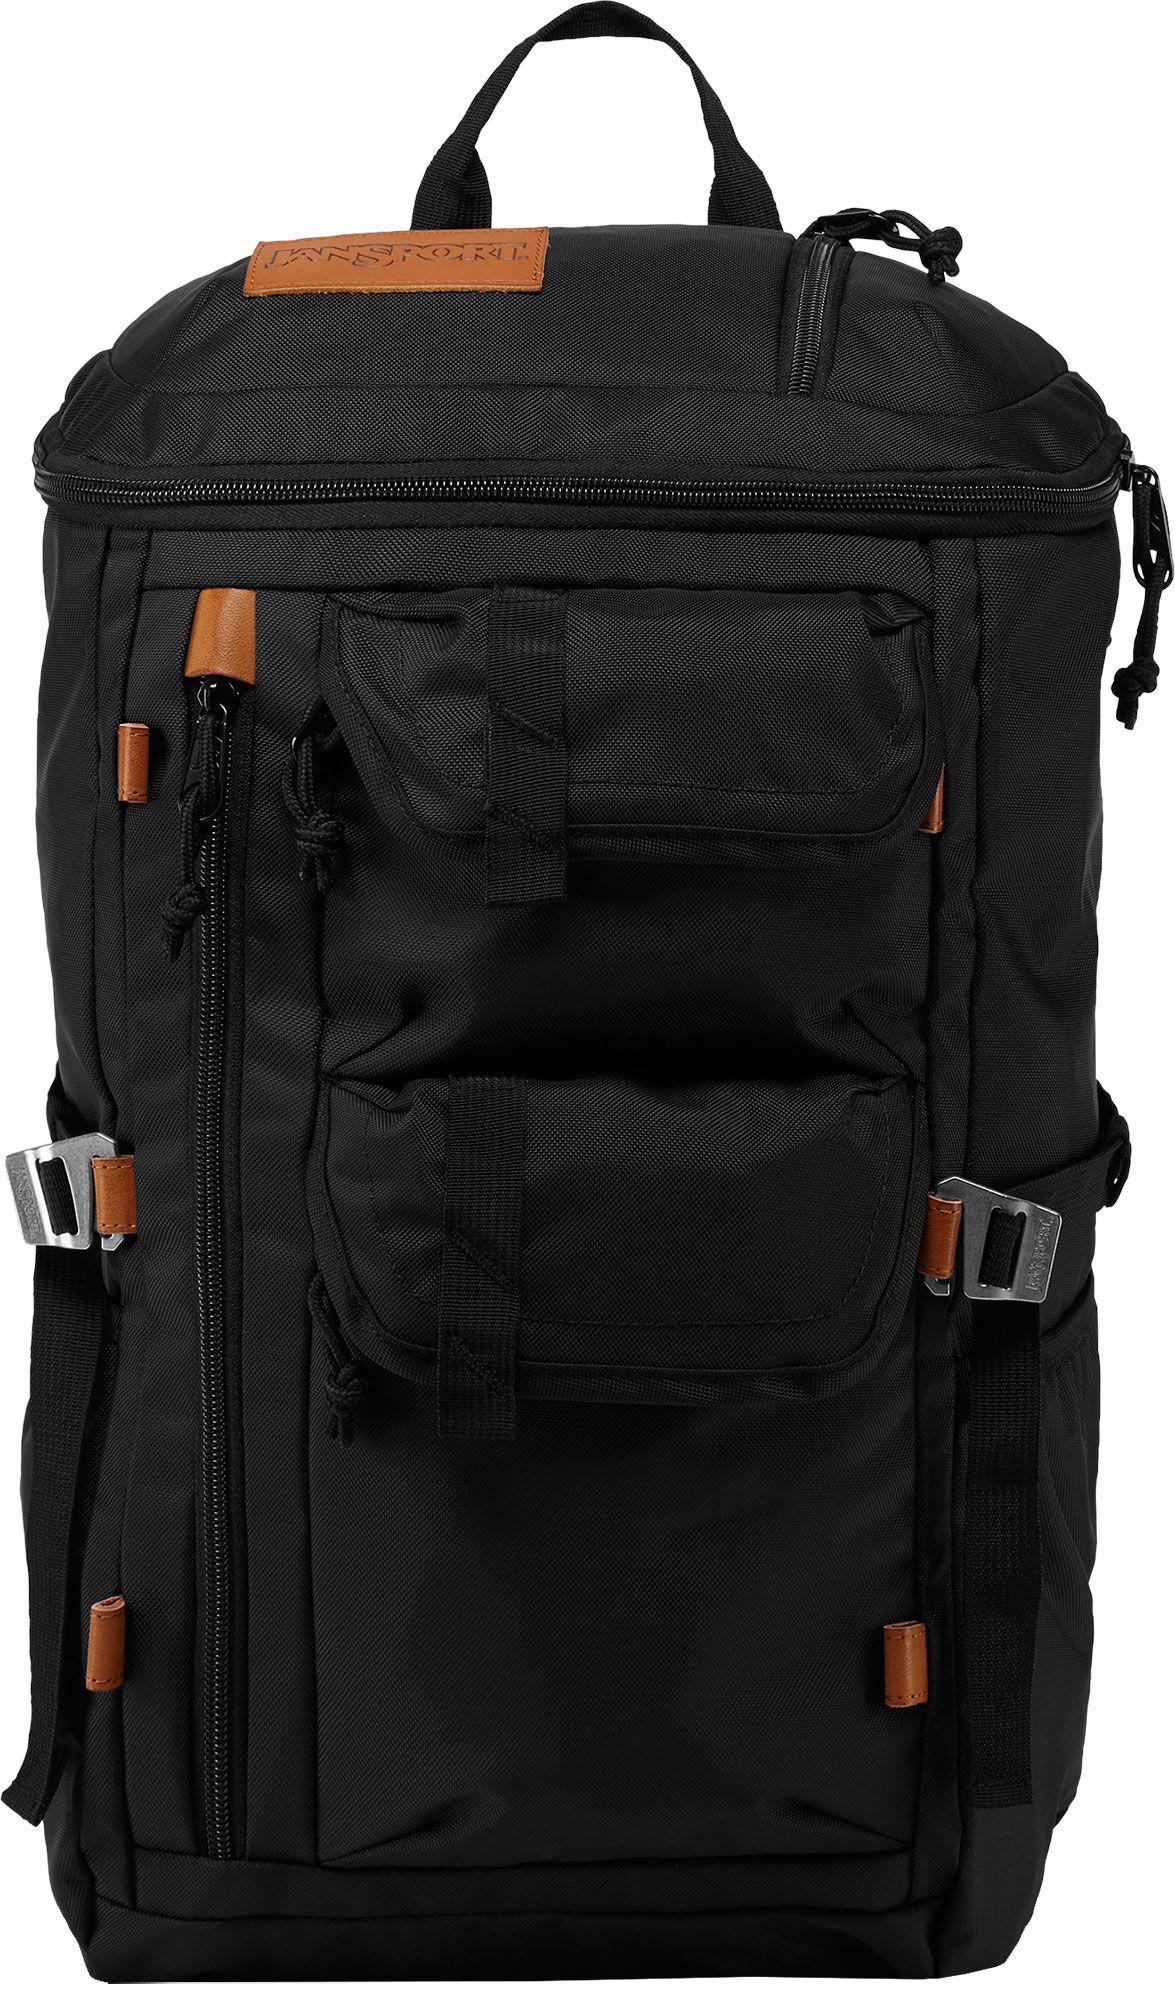 jansport everett backpack